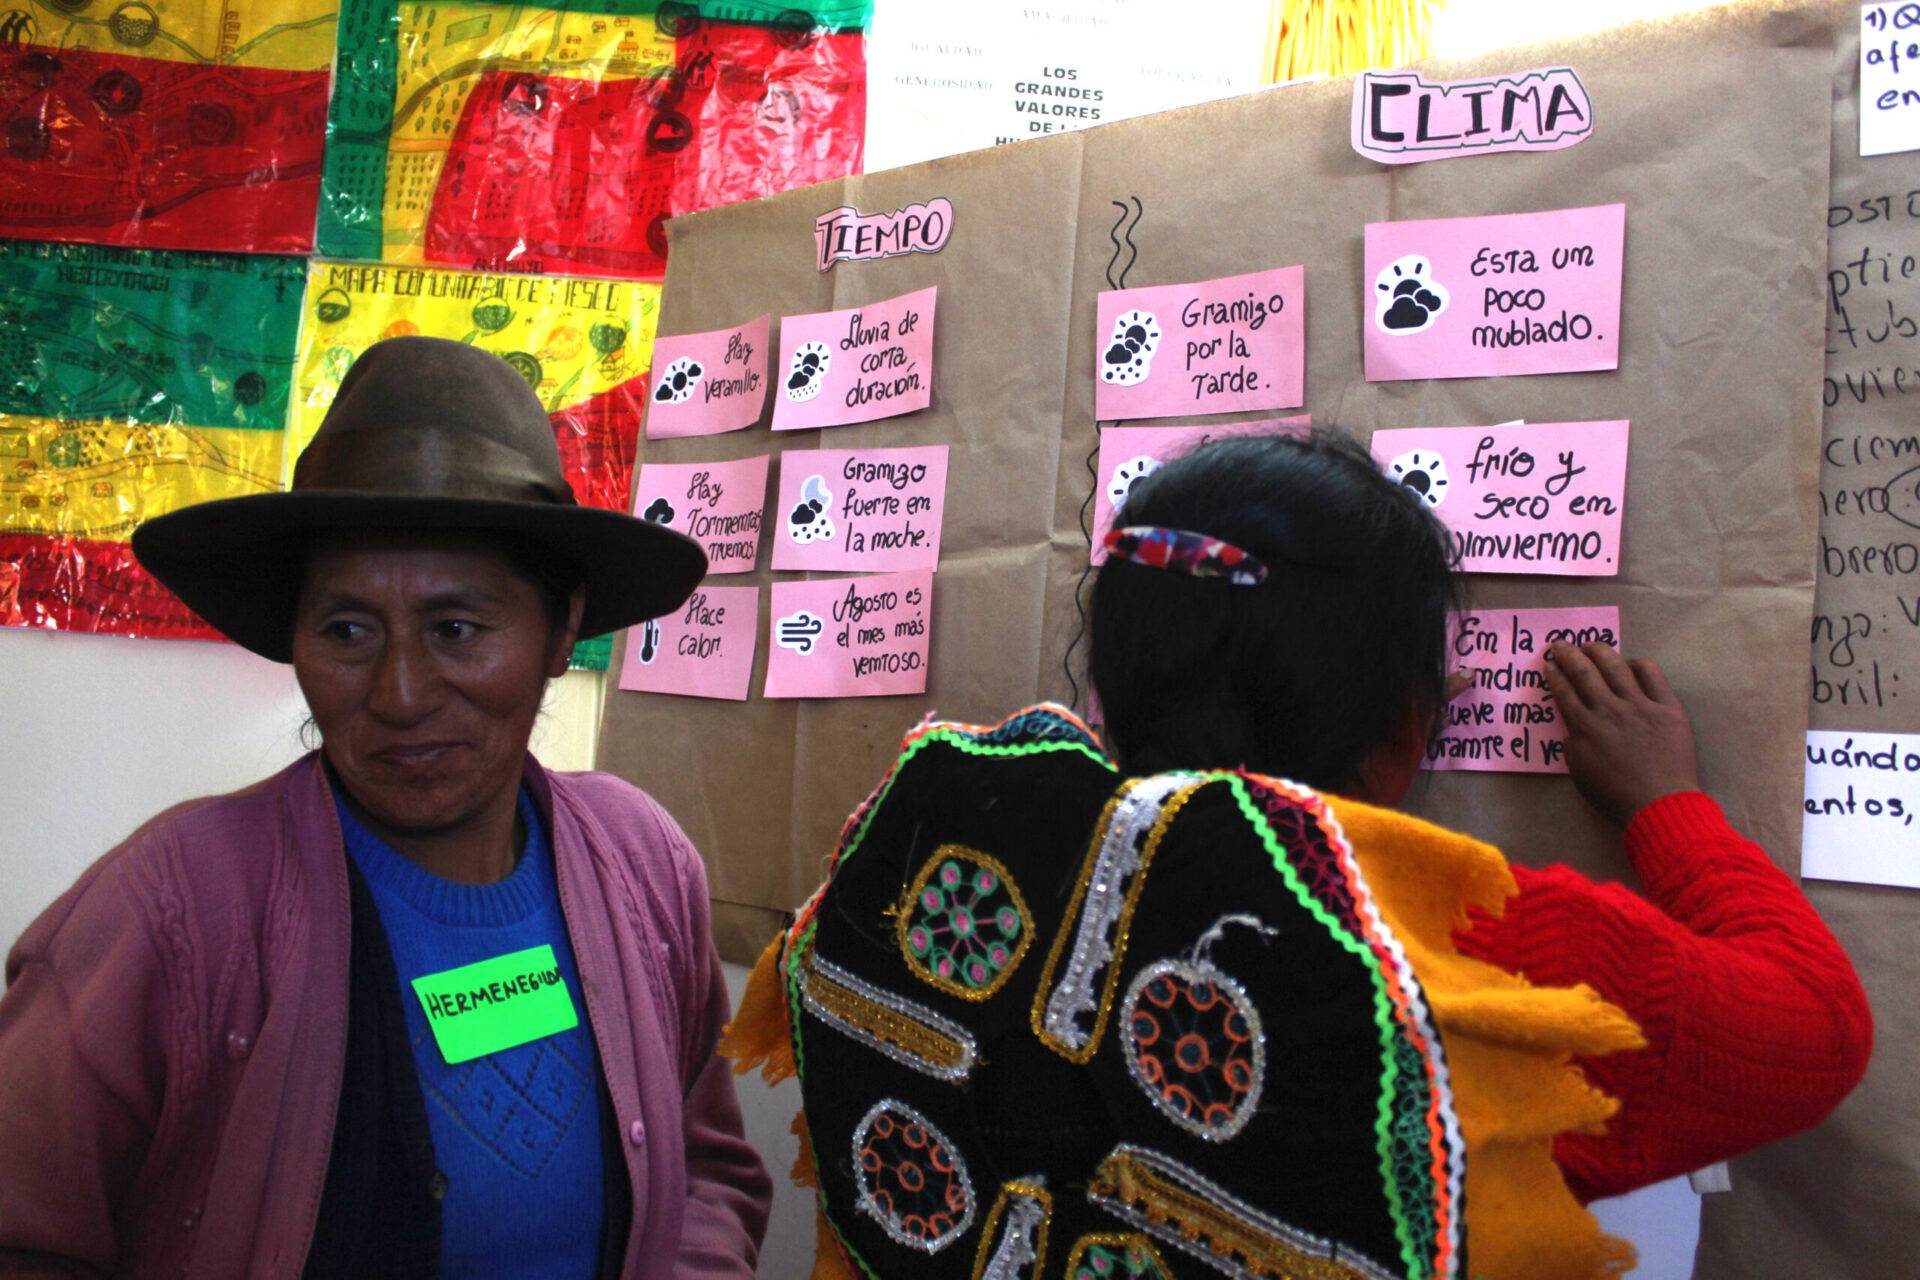 Mujeres de los Andes, participan de los Talleres Climáticos deCampo y reciben capacitación de los términos básico de meteorología. (M. Dapozzo)